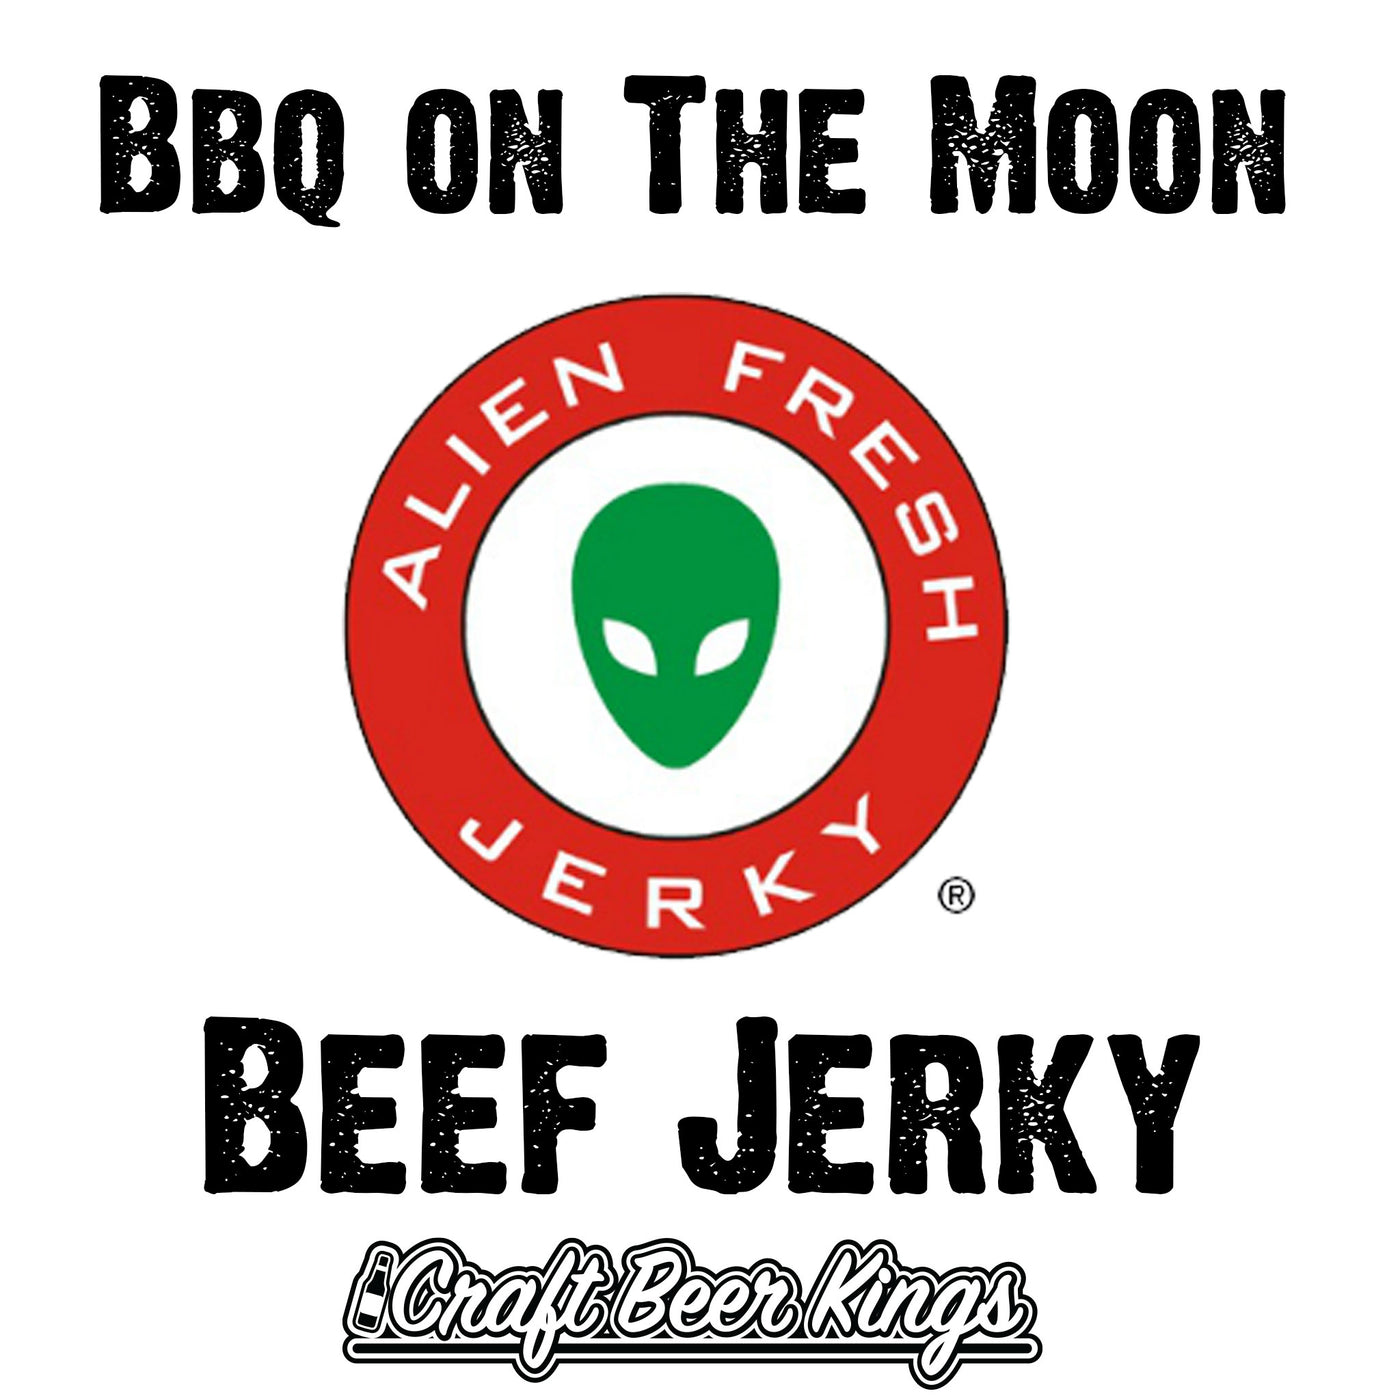 Alien Fresh Jerky -Bbq on The Moon Beef Jerky